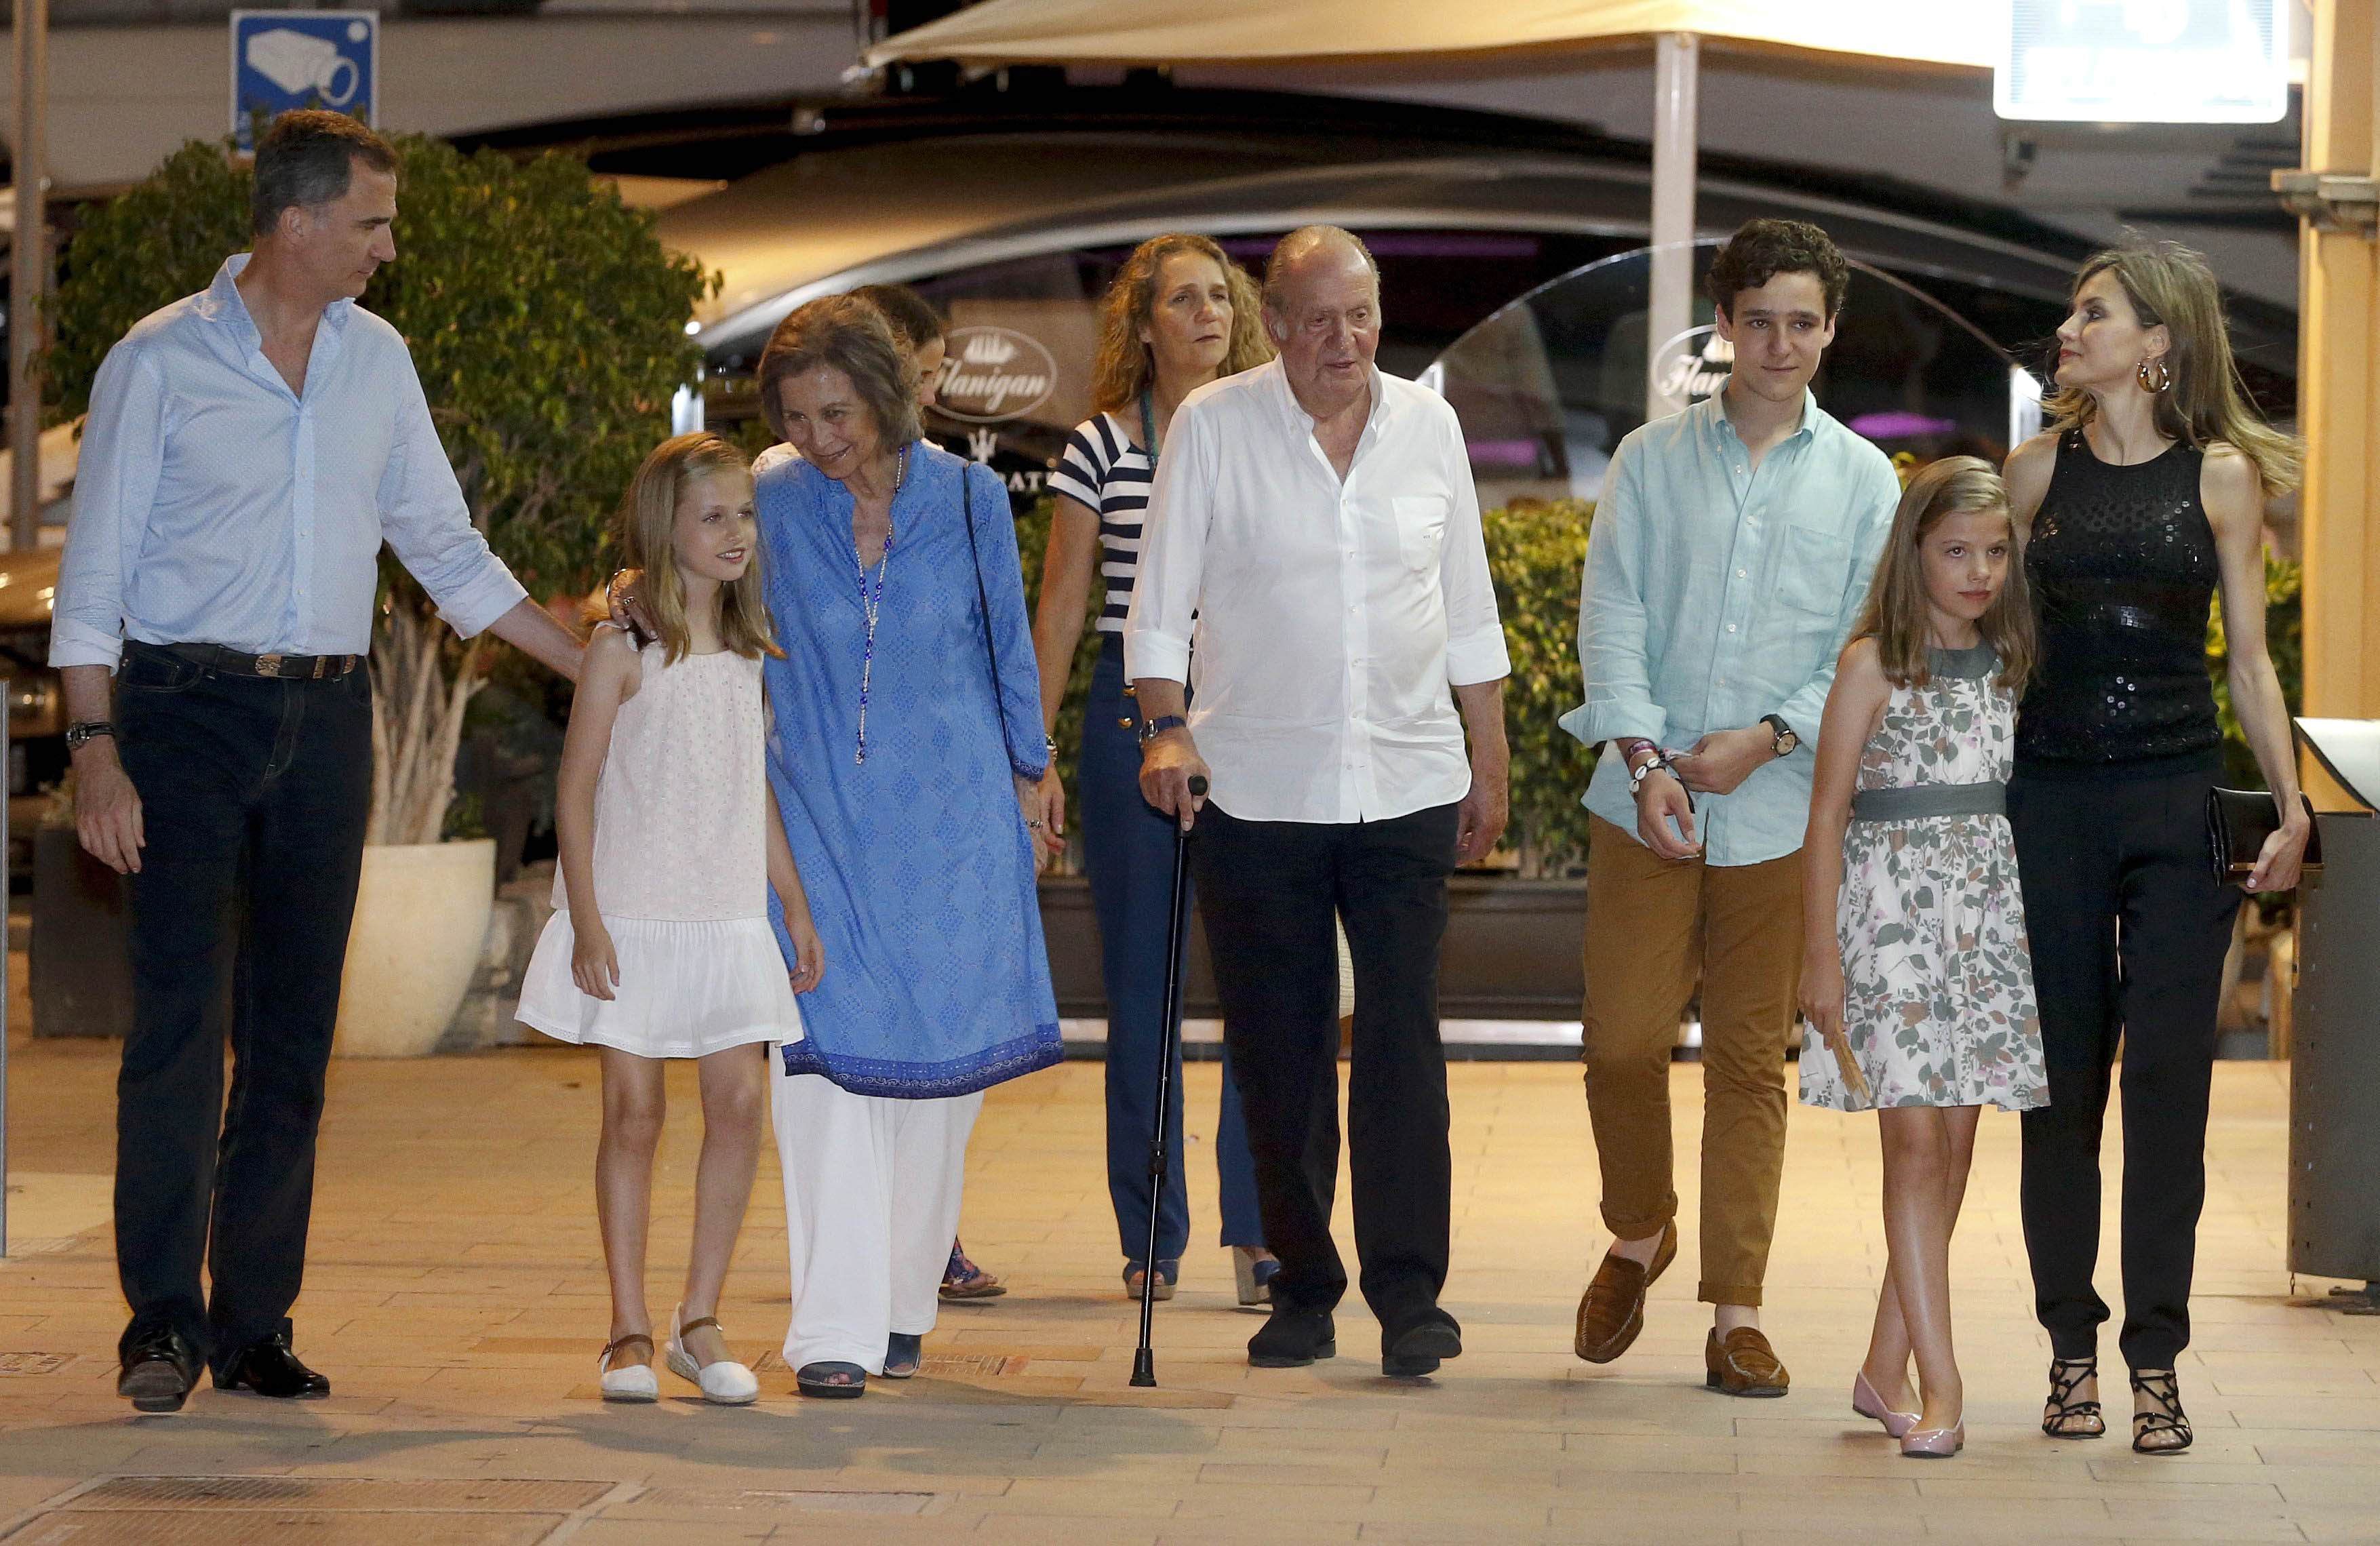 El teatro continuará en Mallorca con Juan Carlos I volviendo a la foto familiar